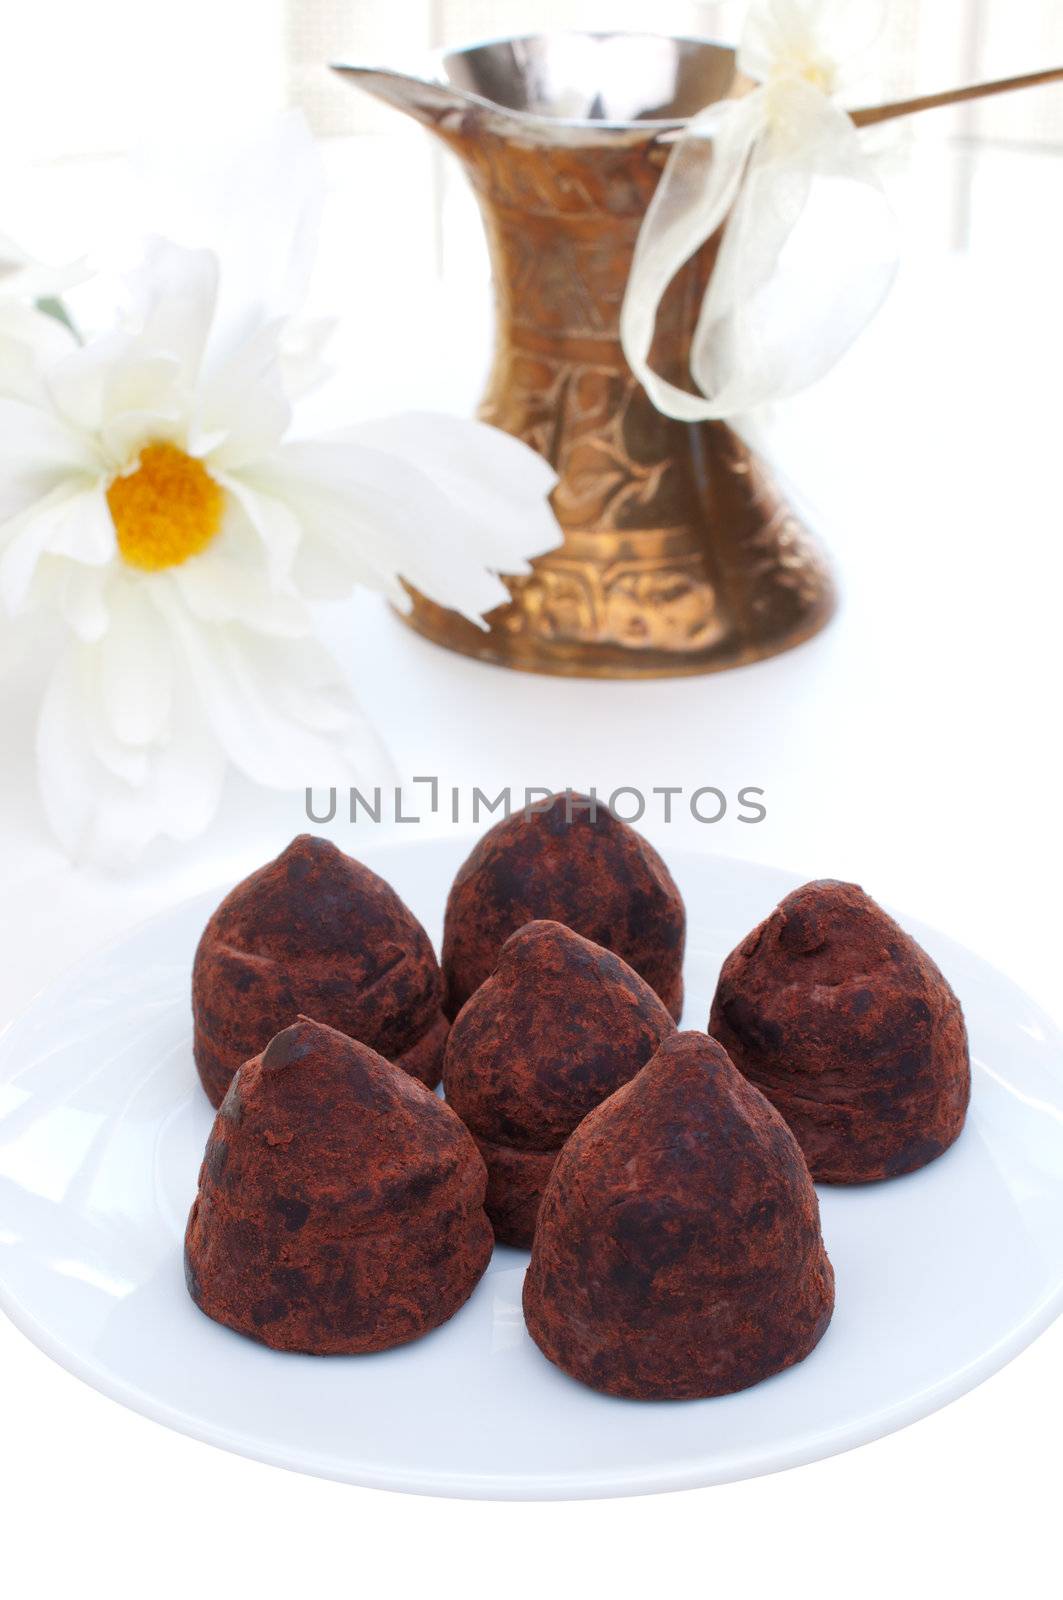 Six truffles on a plate  by Nanisimova